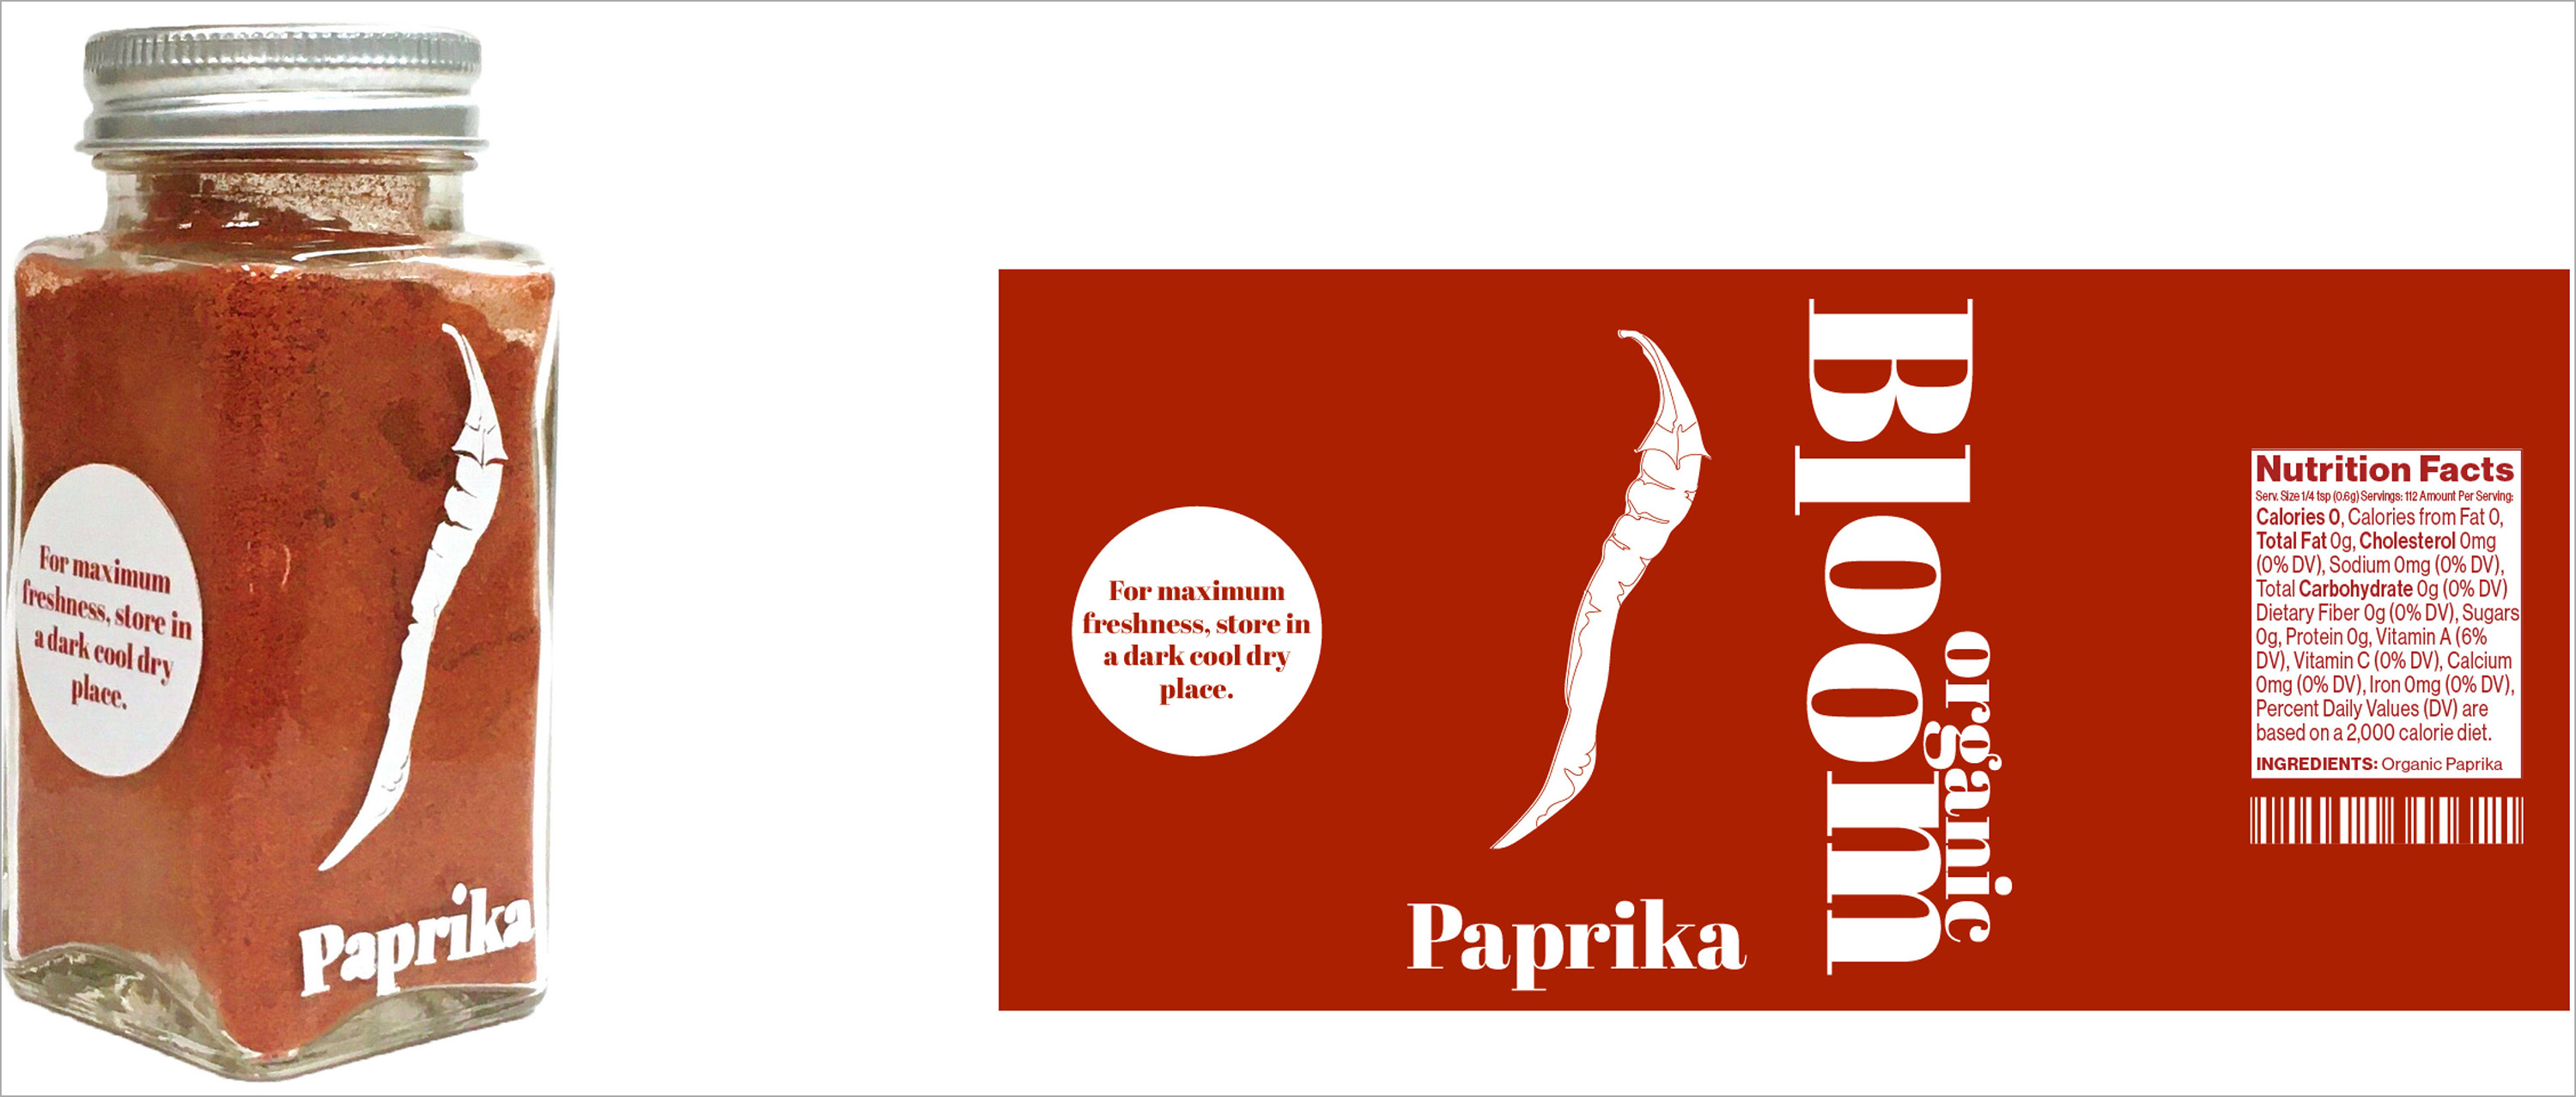 Label and bottle design for paprika.